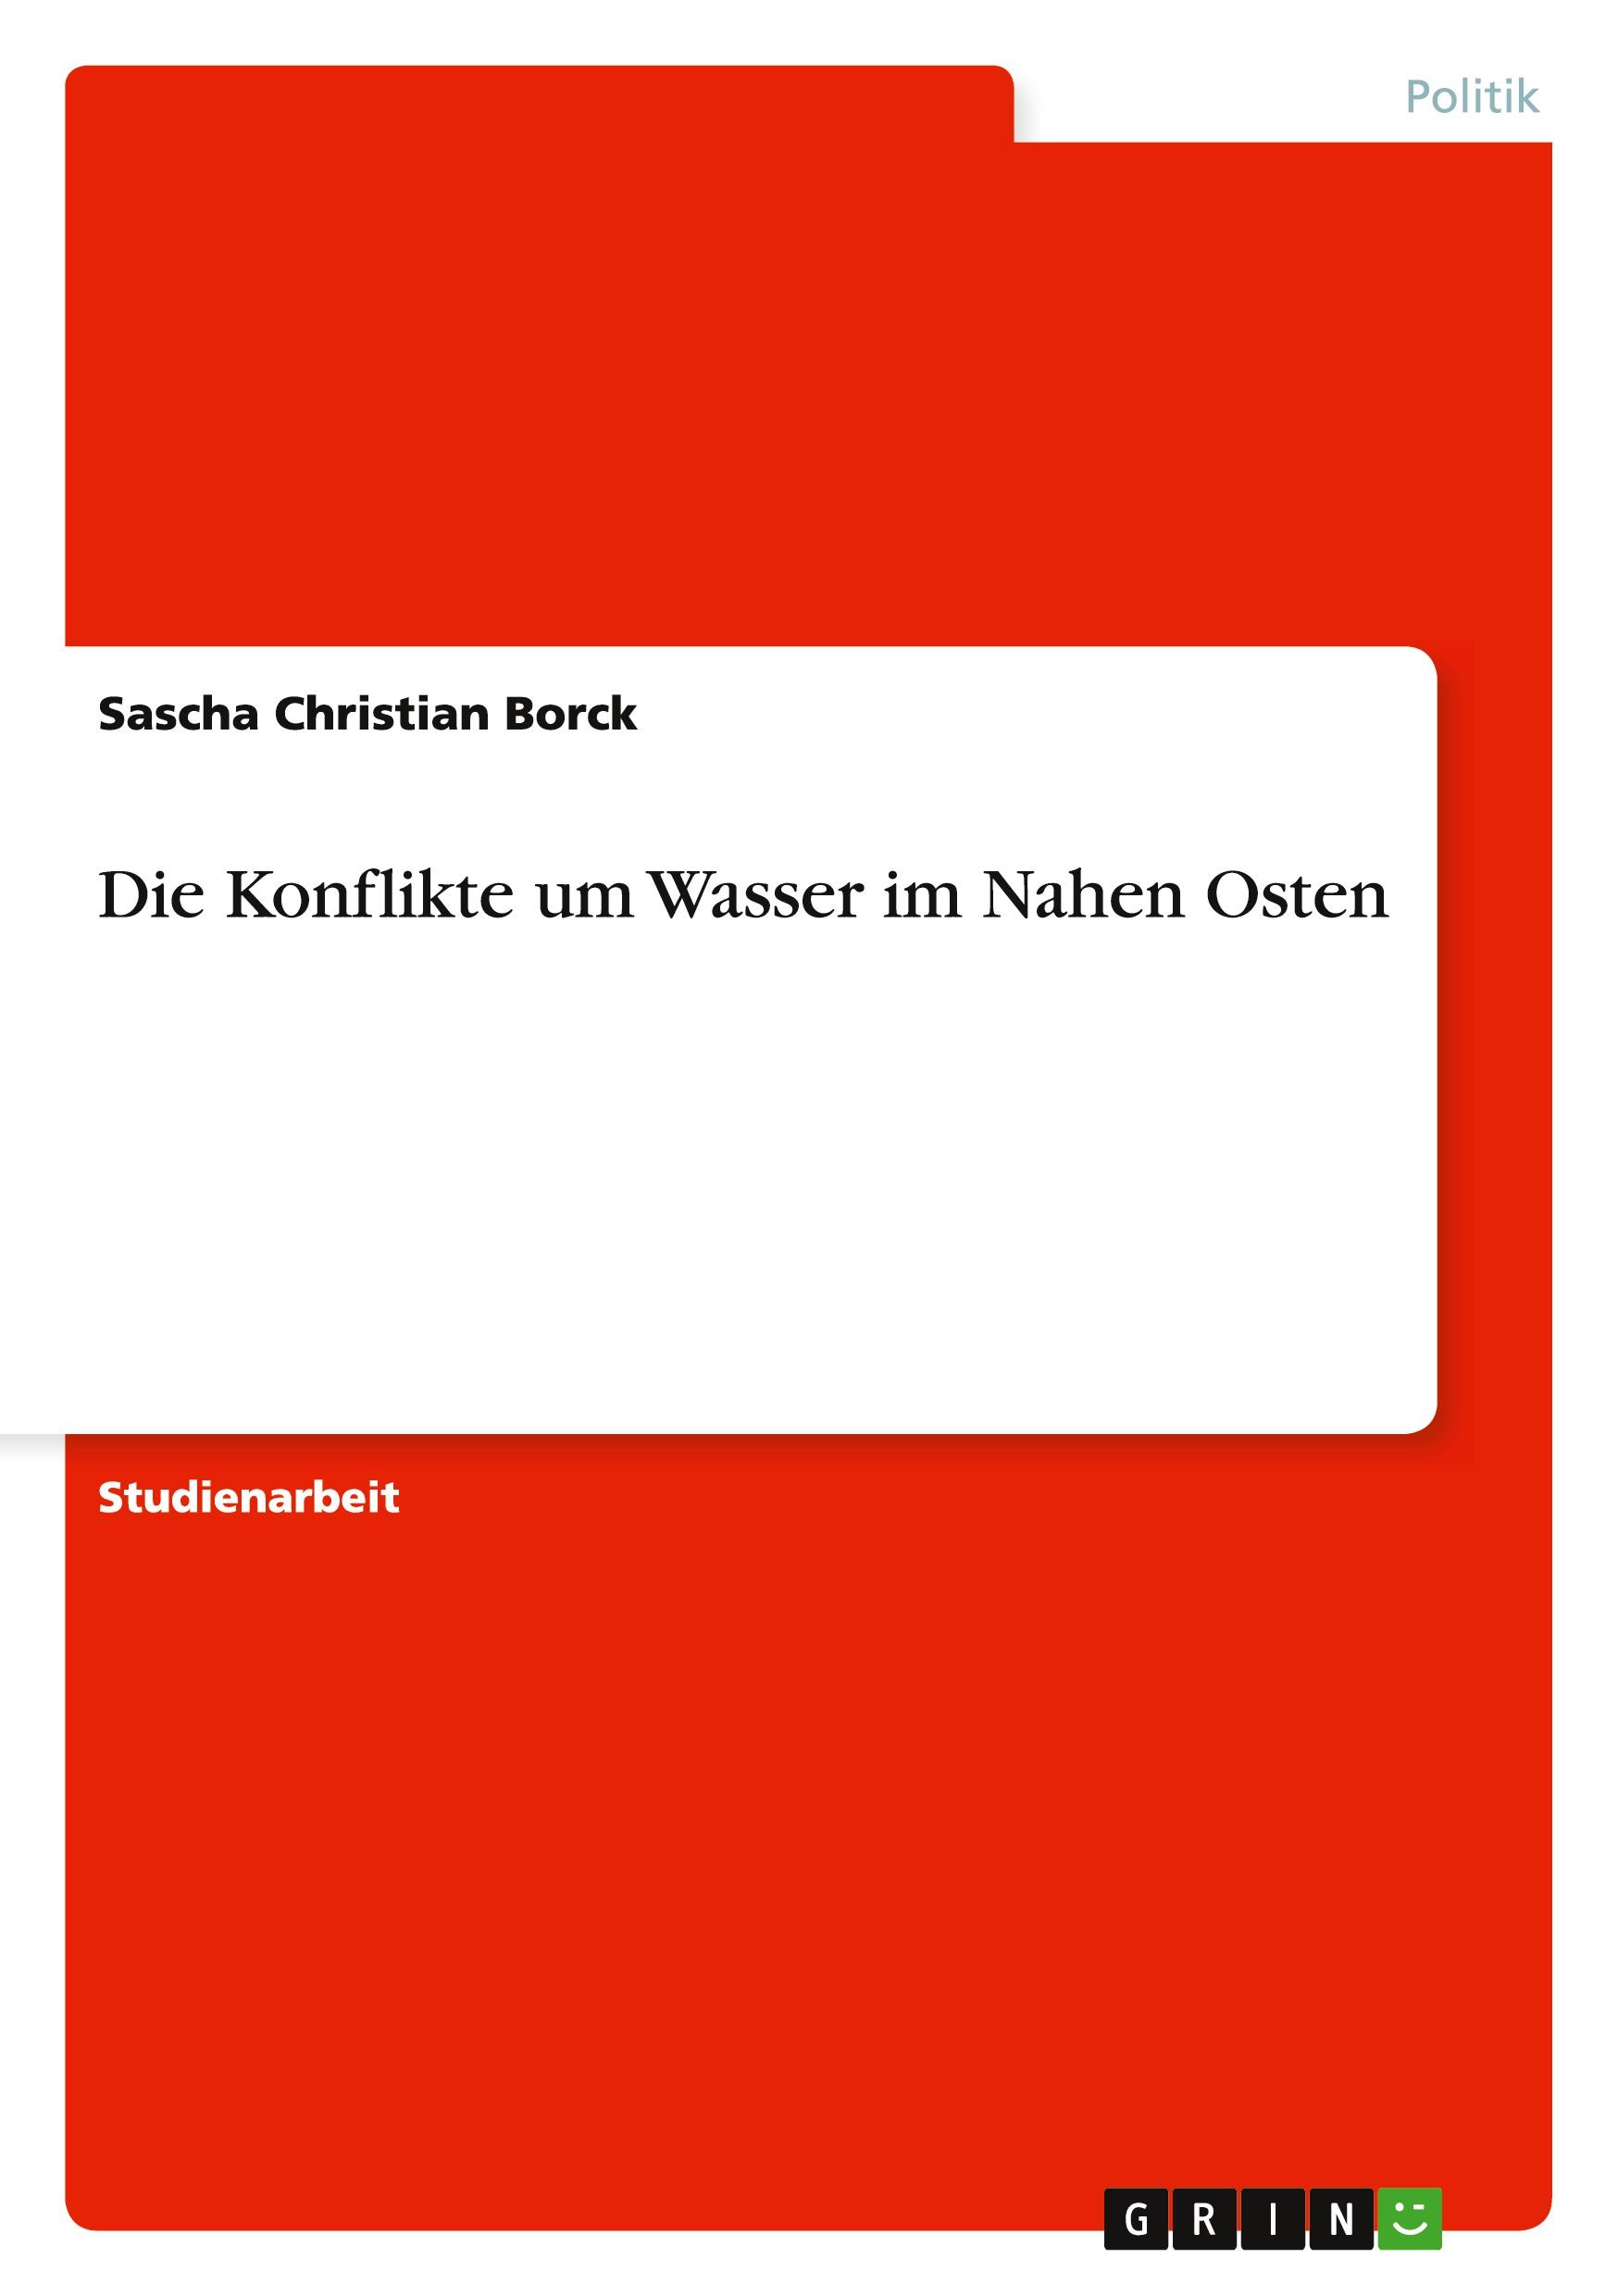 Die Konflikte um Wasser im Nahen Osten  Sascha Christian Borck  Taschenbuch  Deutsch  2010 - Borck, Sascha Christian